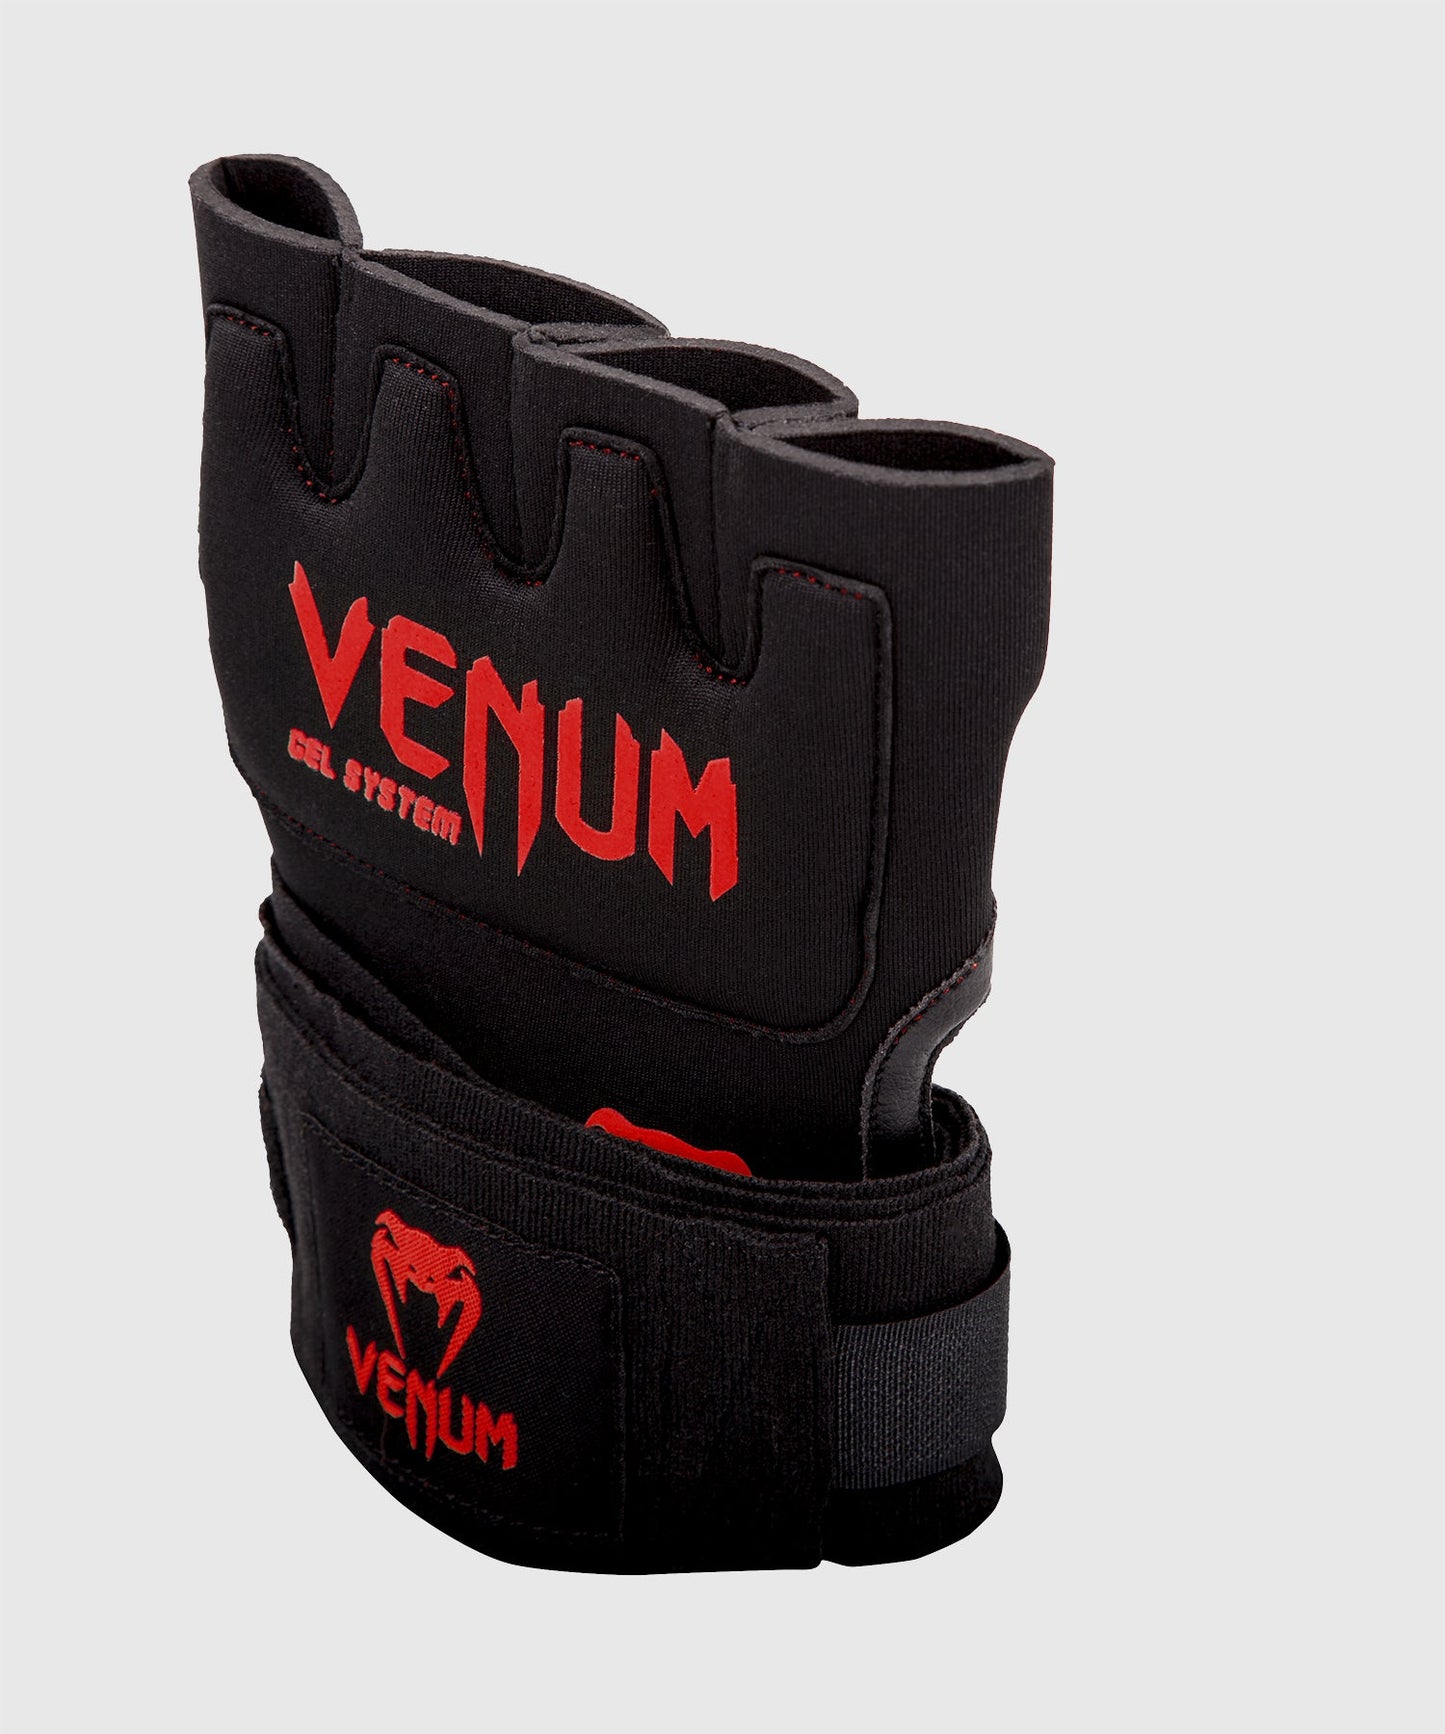 Venum Gel Kontact Binnenhandschoenen - Zwart/Rood